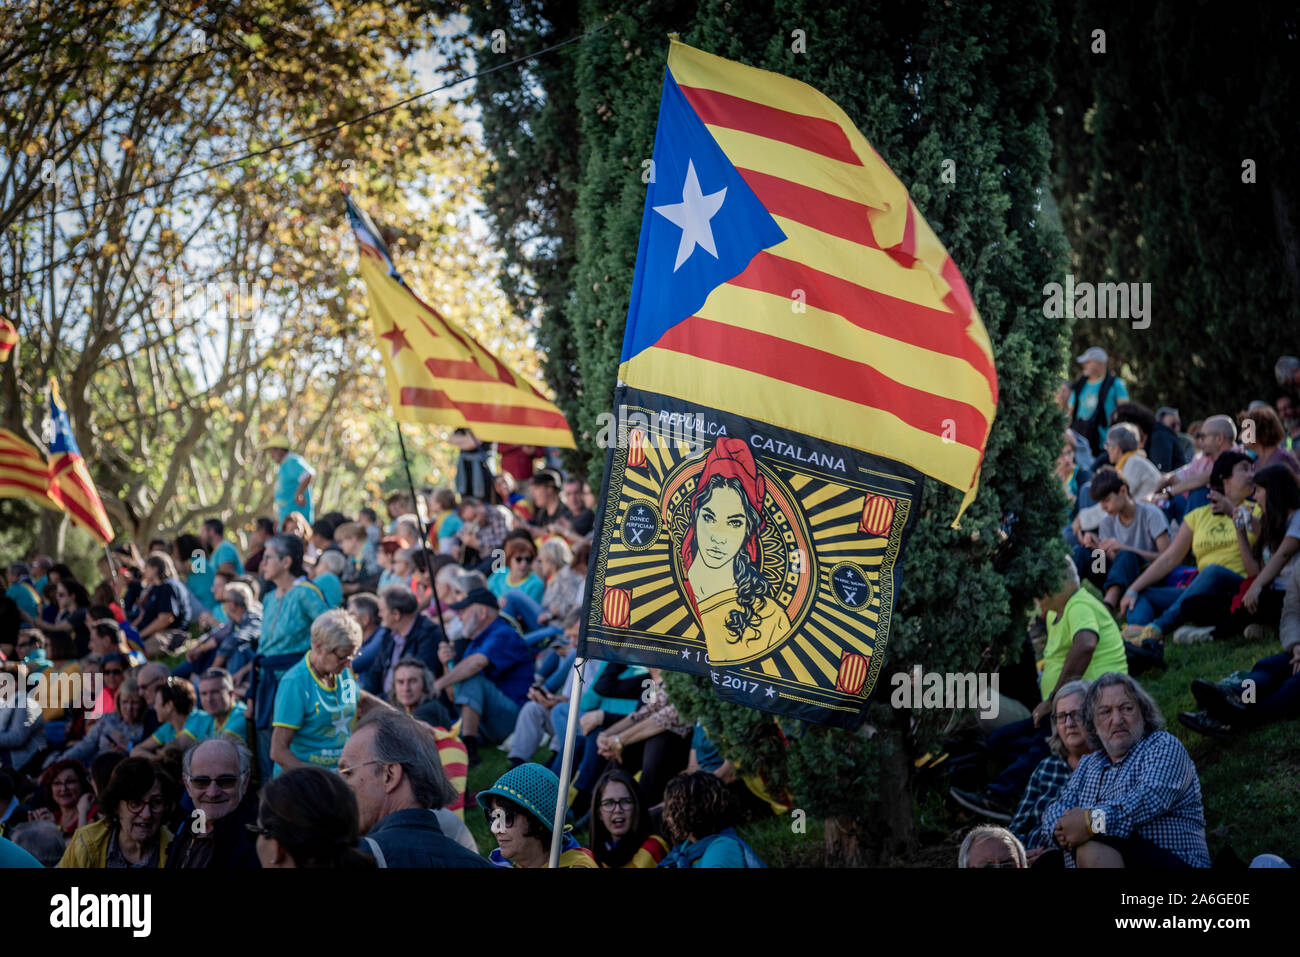 Barcelona Cataluña el dia 26 de octubre 2019 la asociaciones separatista  se manifiesta en Barcelona con el lema libertad políticos presos  BCN 2019 Stock Photo